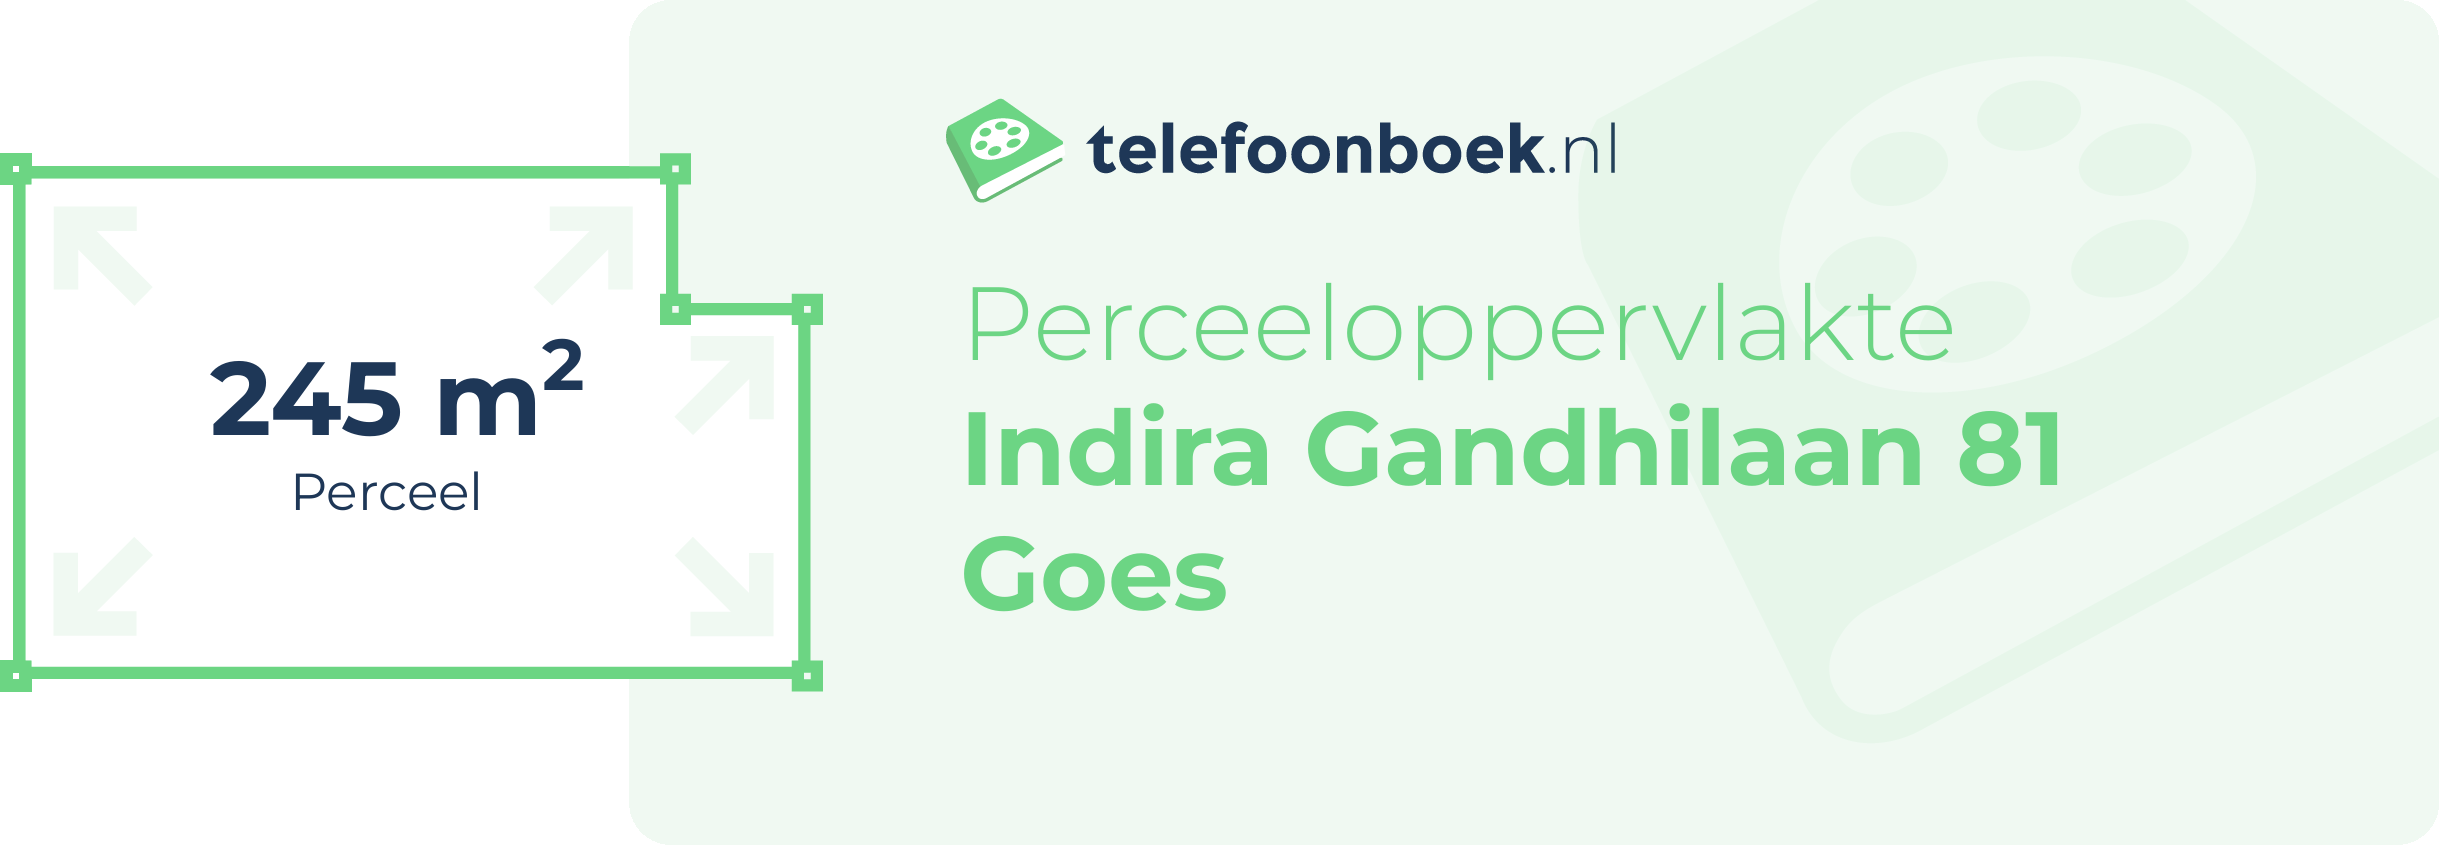 Perceeloppervlakte Indira Gandhilaan 81 Goes